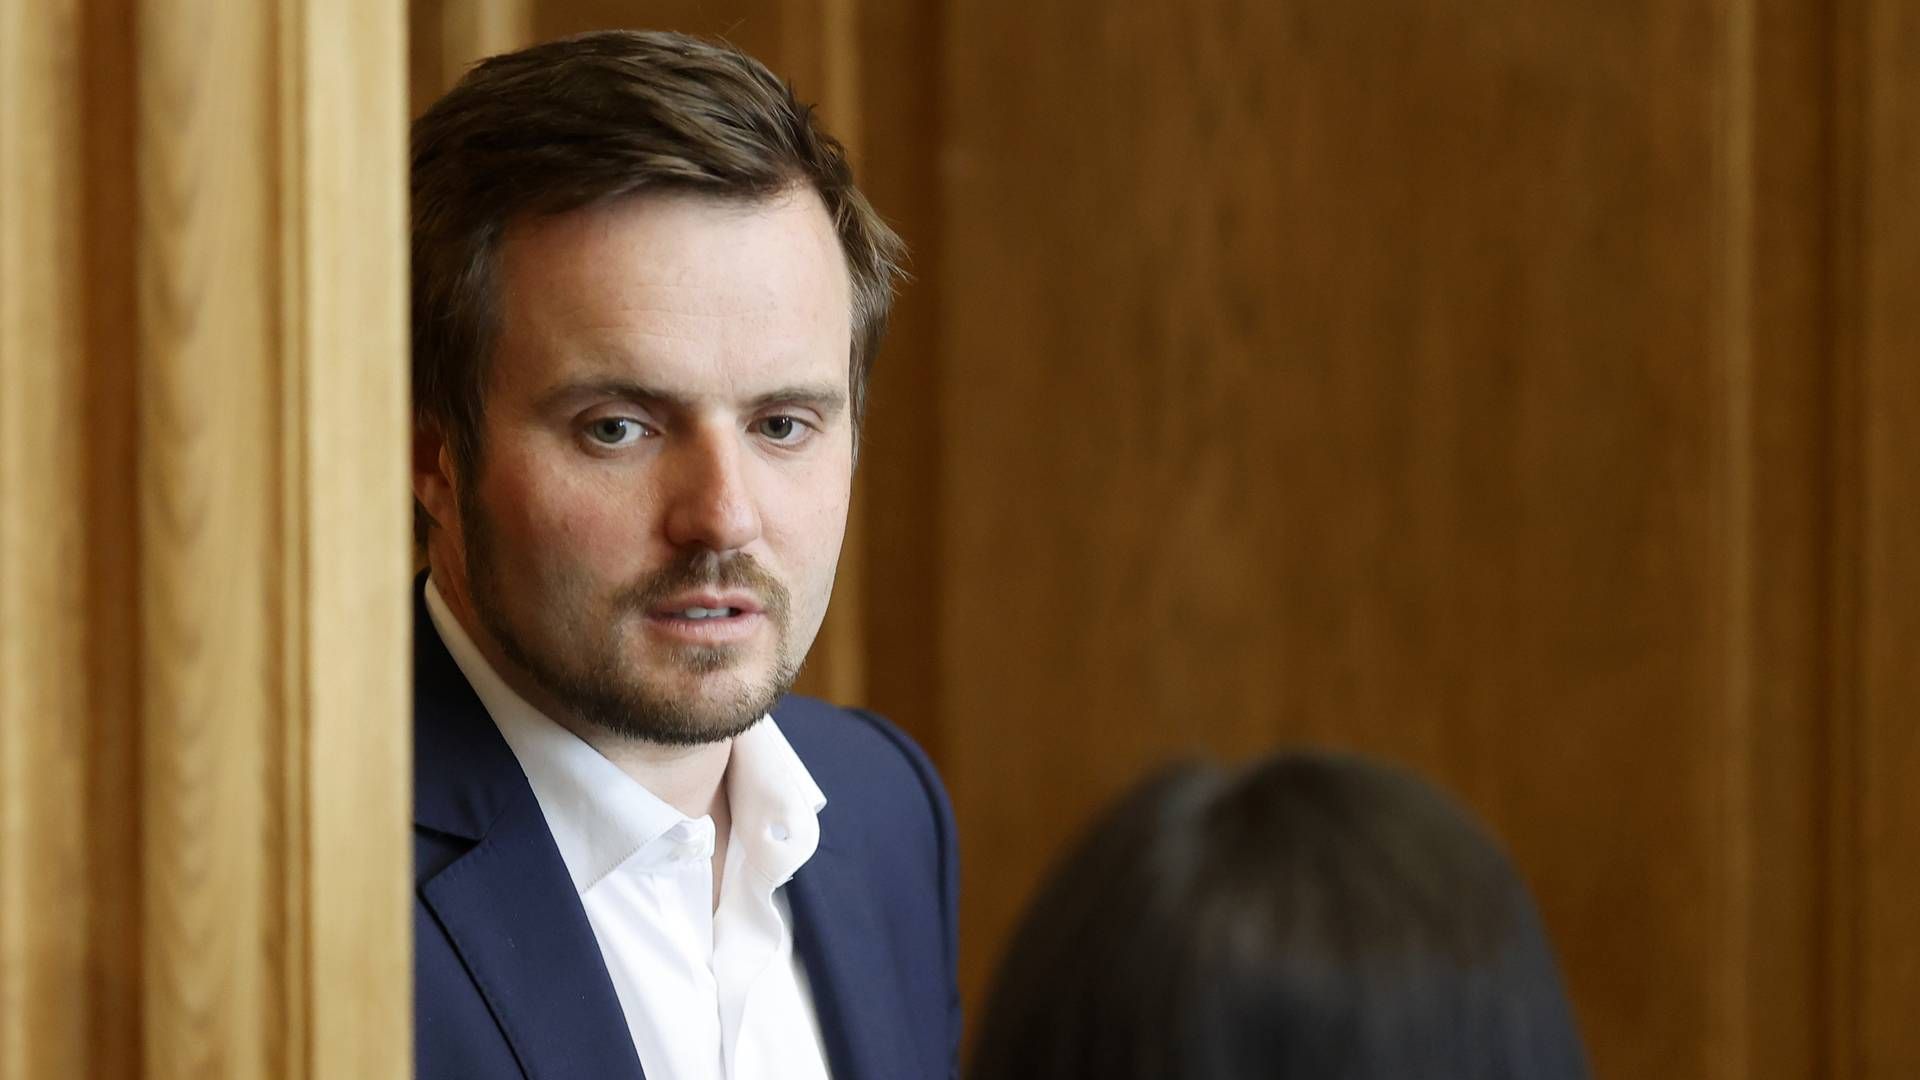 Erhvervsminister Simon Kollerup har ikke givet interviews om lovforslaget. | Foto: Jens Dresling